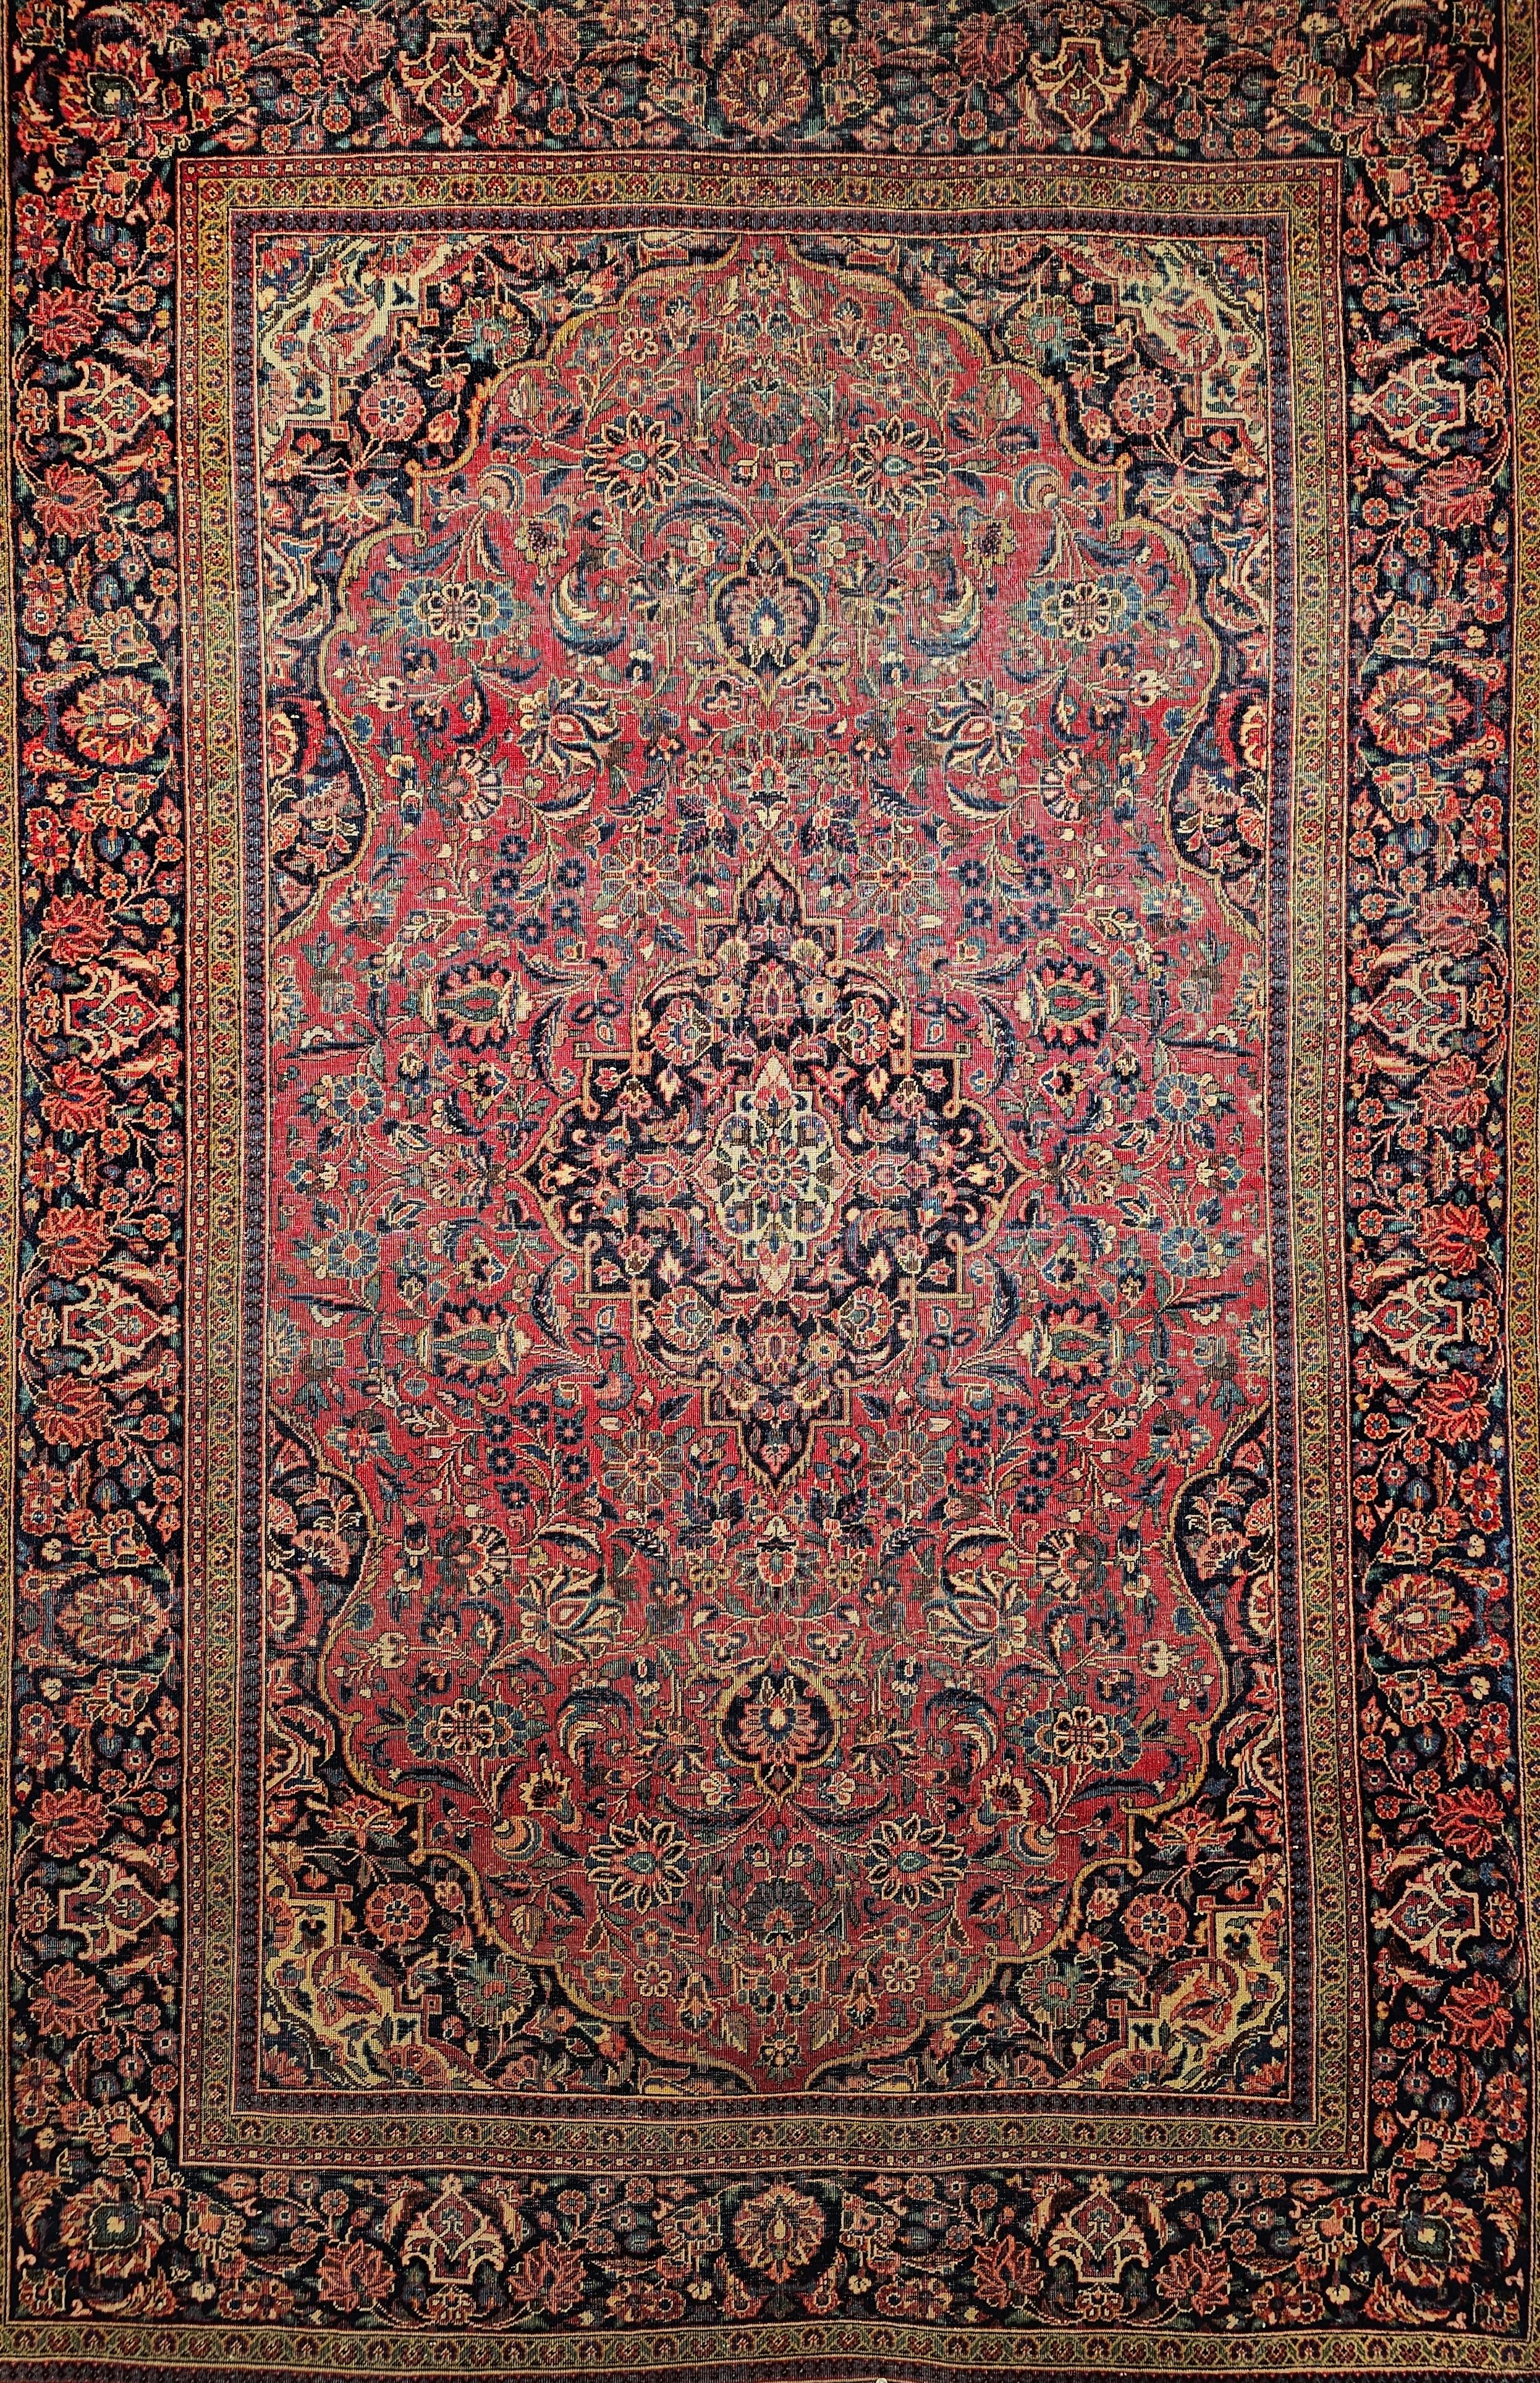 Vintage Persian Kashan Teppich mit floralem Muster in Burgund und Marineblau.  Das klassische Design und die leuchtende, elastische Wollqualität dieses herausragenden persischen Kashan-Teppichs im Vintage-Stil vermitteln einen Eindruck von